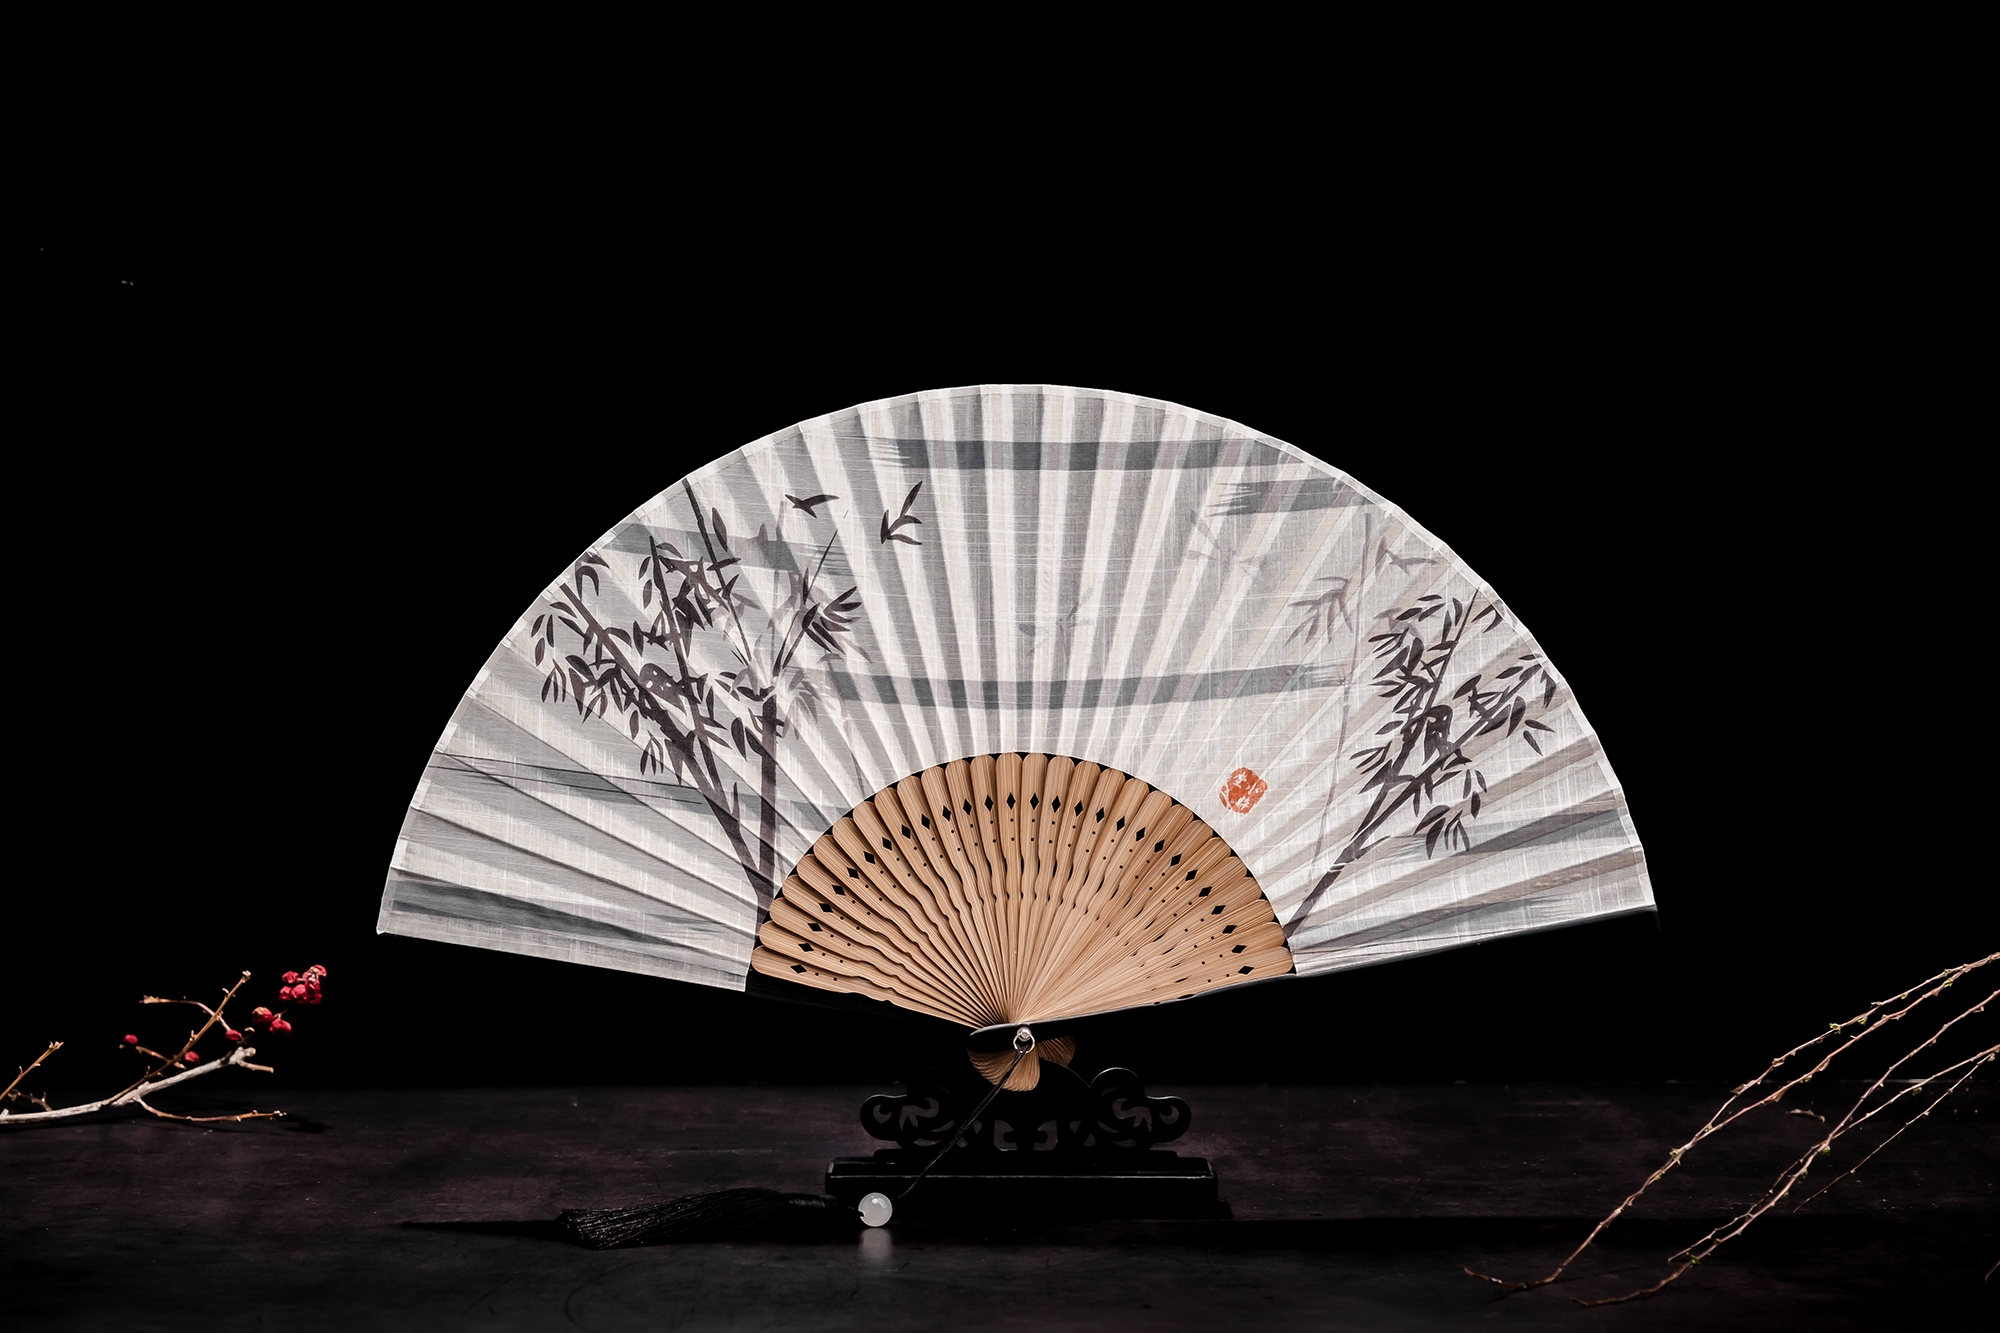 Japanese Folding Fan | Japanese Folding Cotton And Linen Hand-held Fan ...